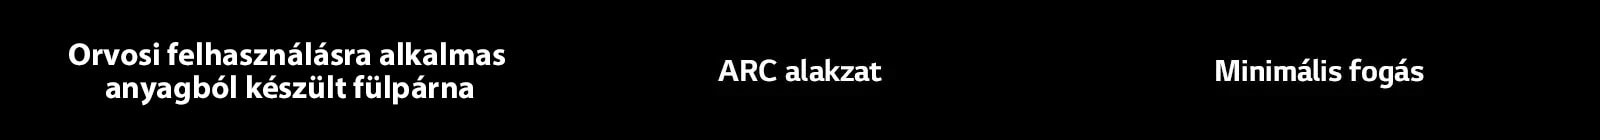 Orvosi minőségű fülzselé ARC alakzat Minimális fogás